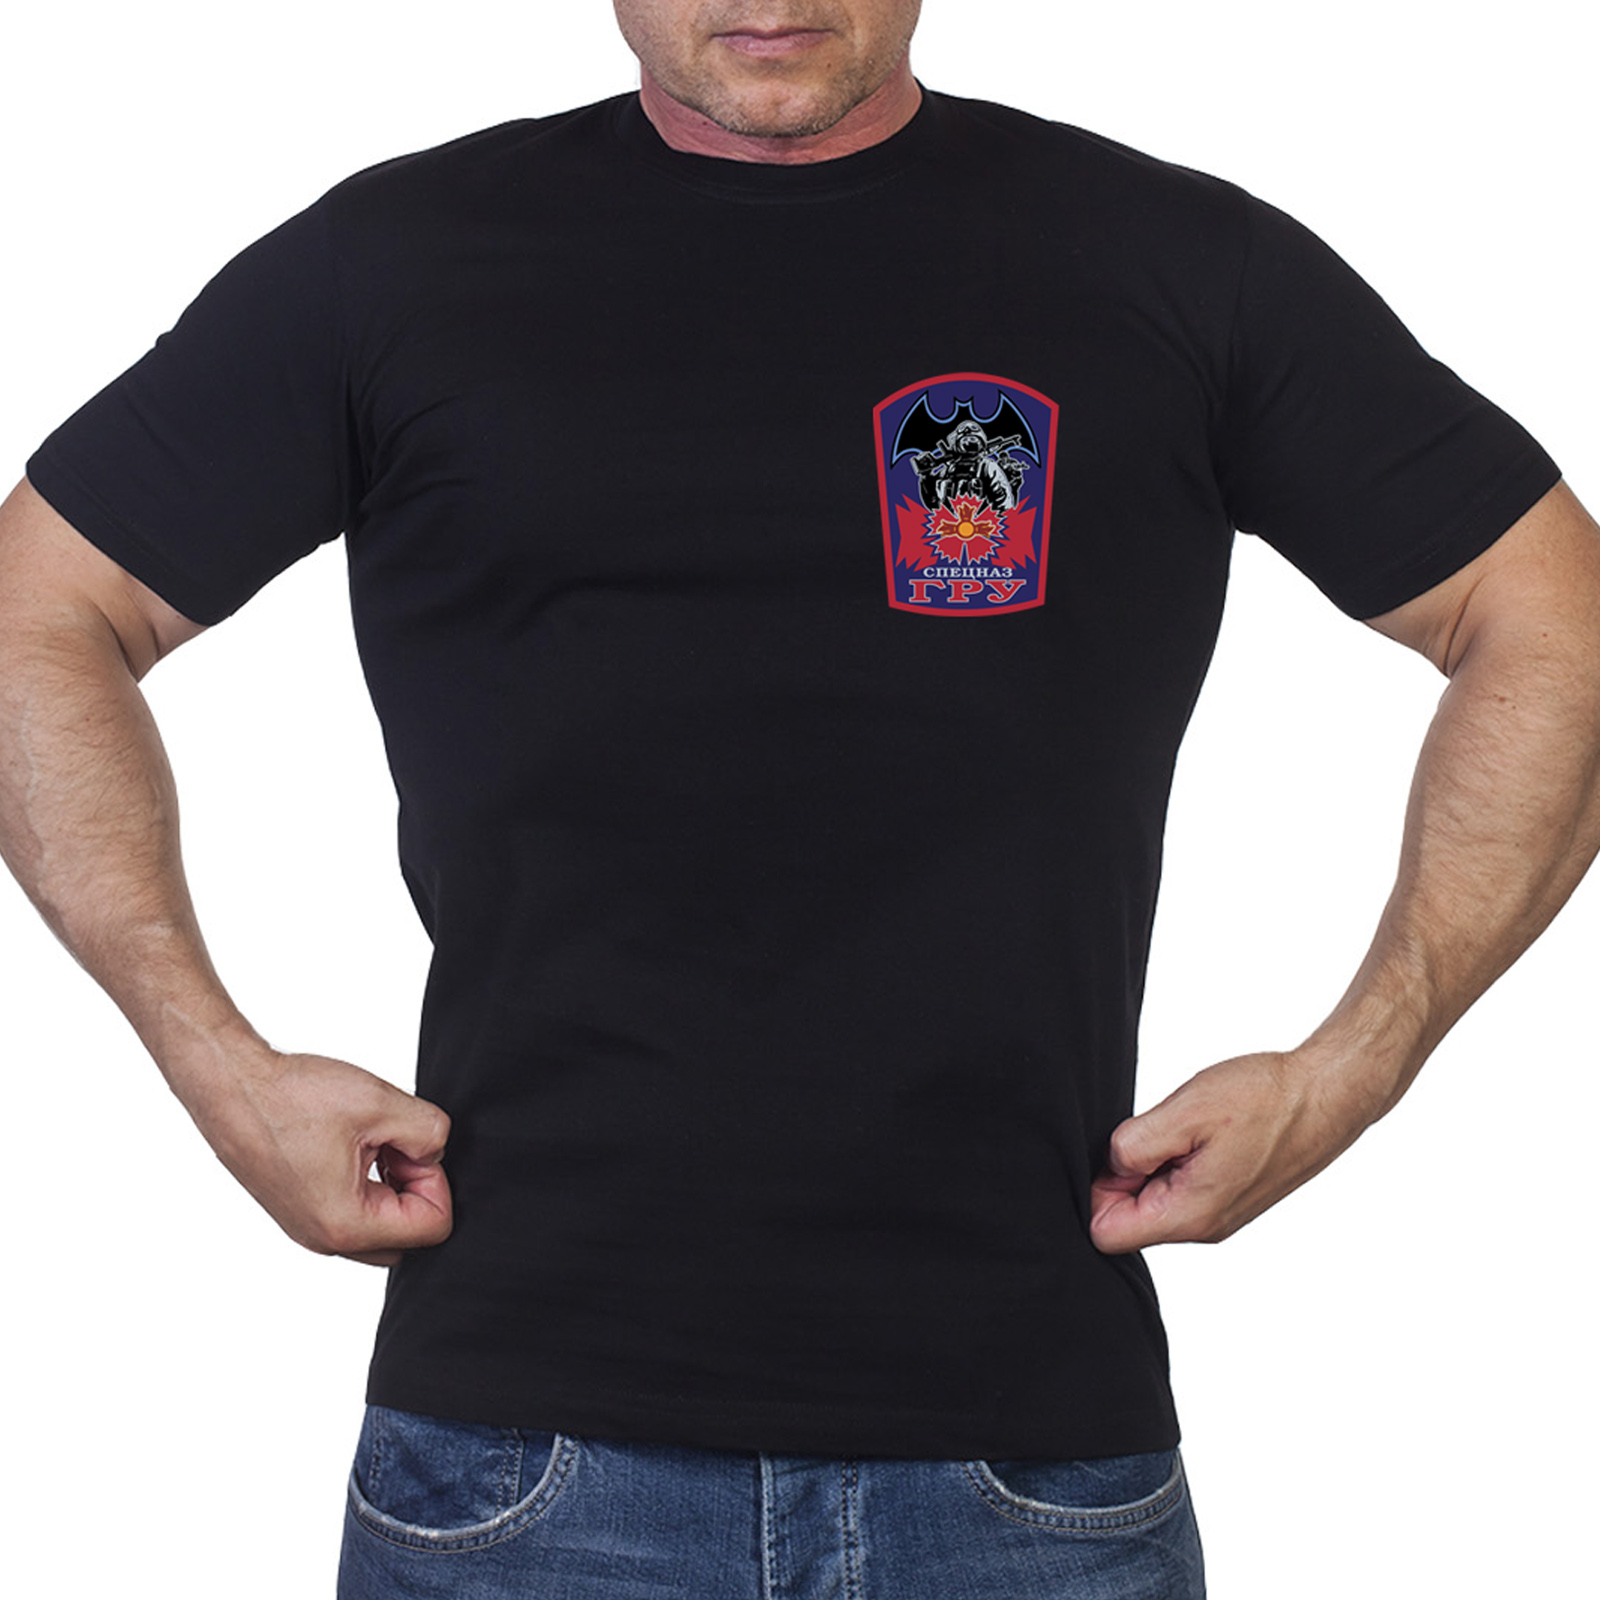 Купить в интернет магазине  футболку Спецназа ГРУ